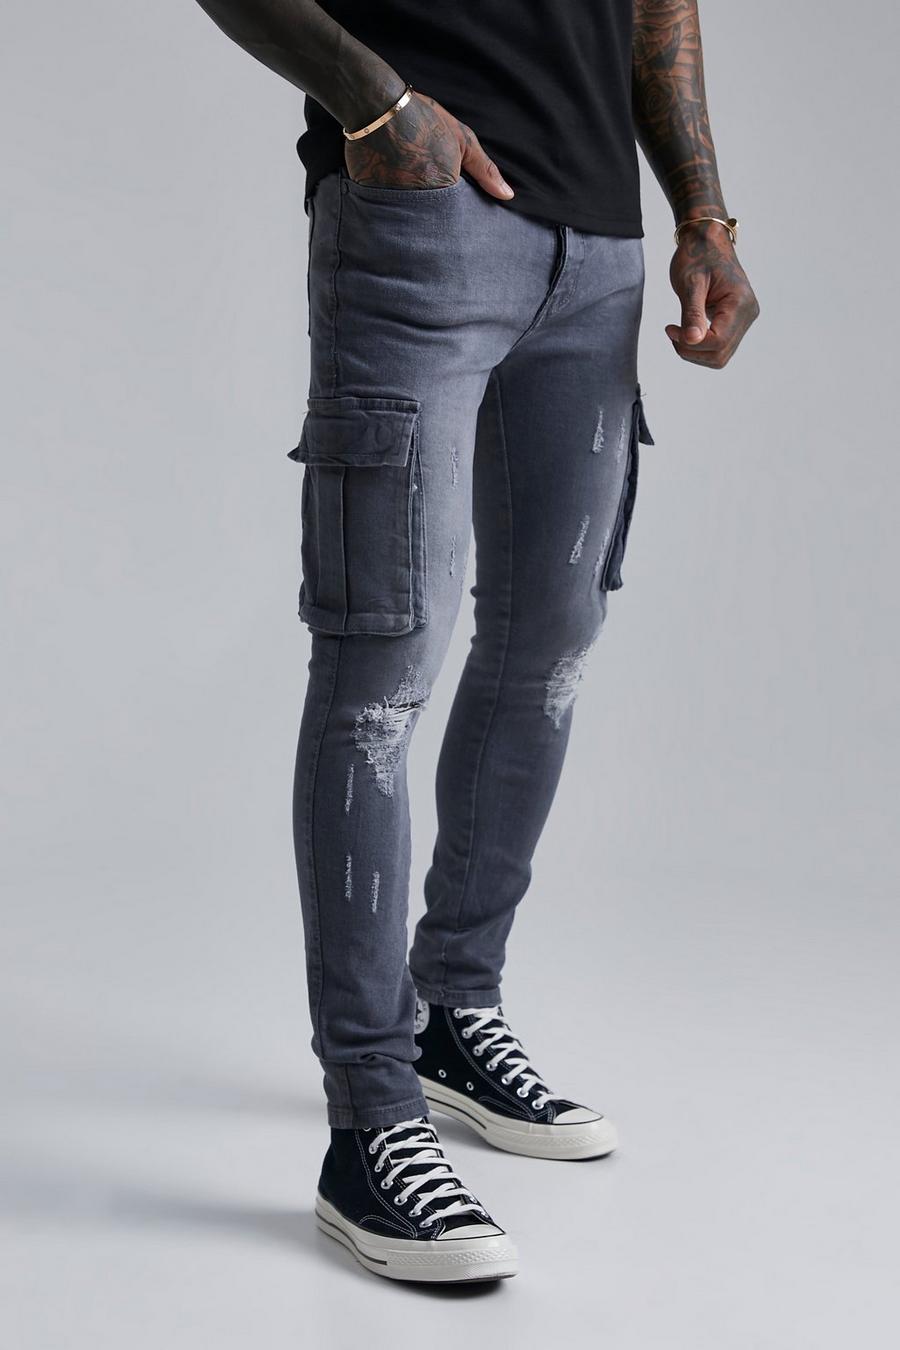 אפור כהה grigio ג'ינס דגמ'ח בגזרת סופר סקיני עם קרעים בברכיים